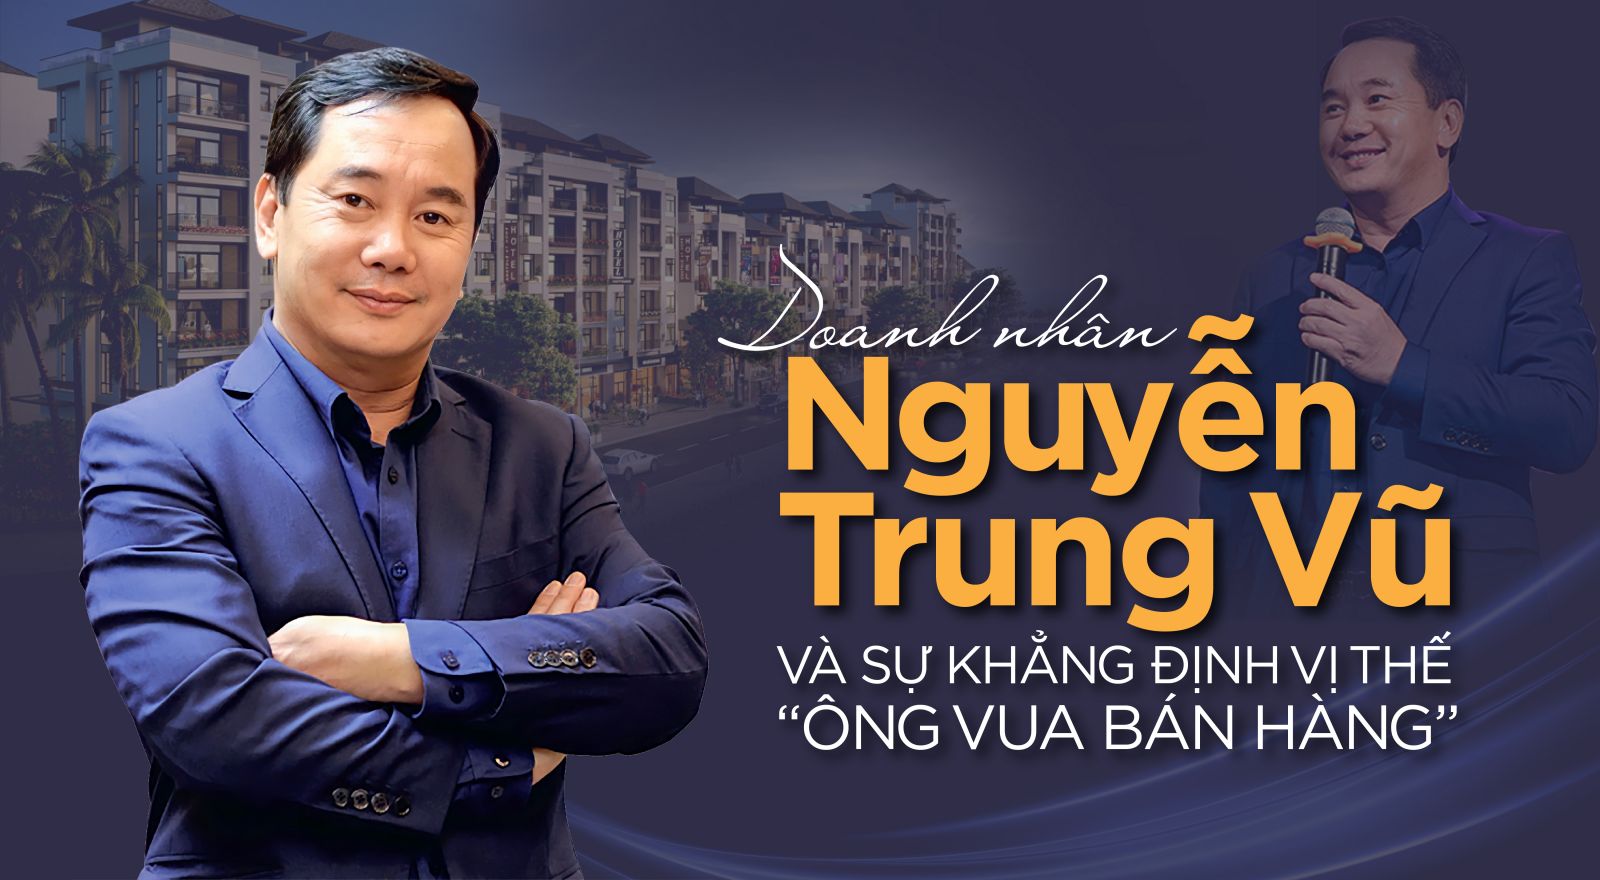 Chủ tịch HĐQT Cen Group - ông Nguyễn Trung Vũ